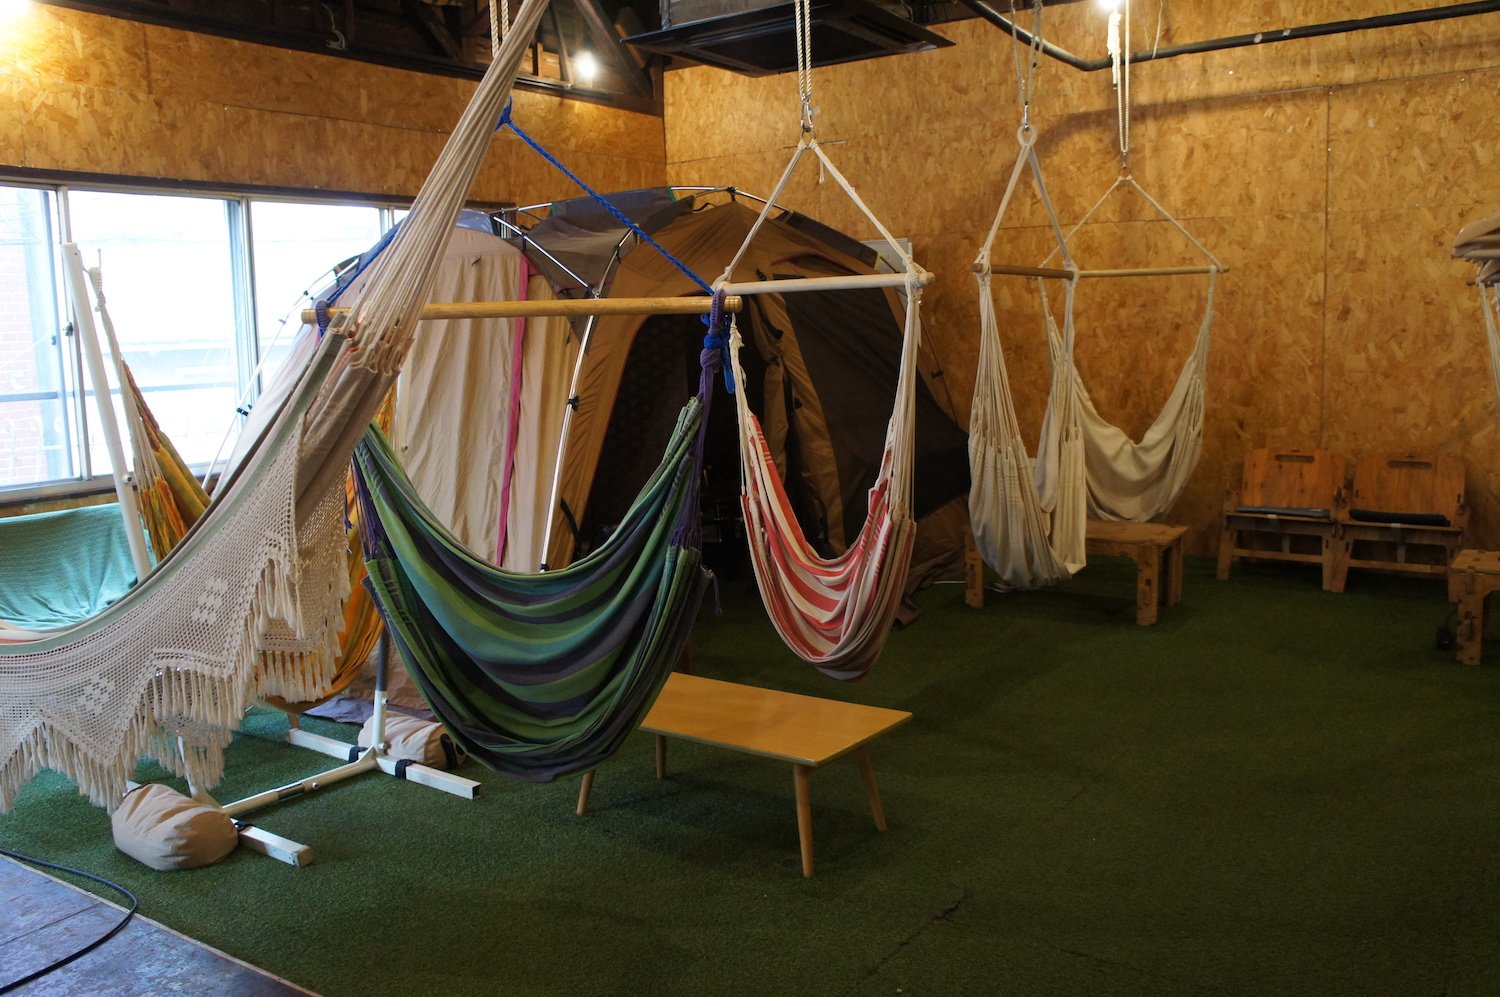 吊り下げタイプ、ベッドタイプと様々なハンモックがある。大型テント内にはソファも完備。